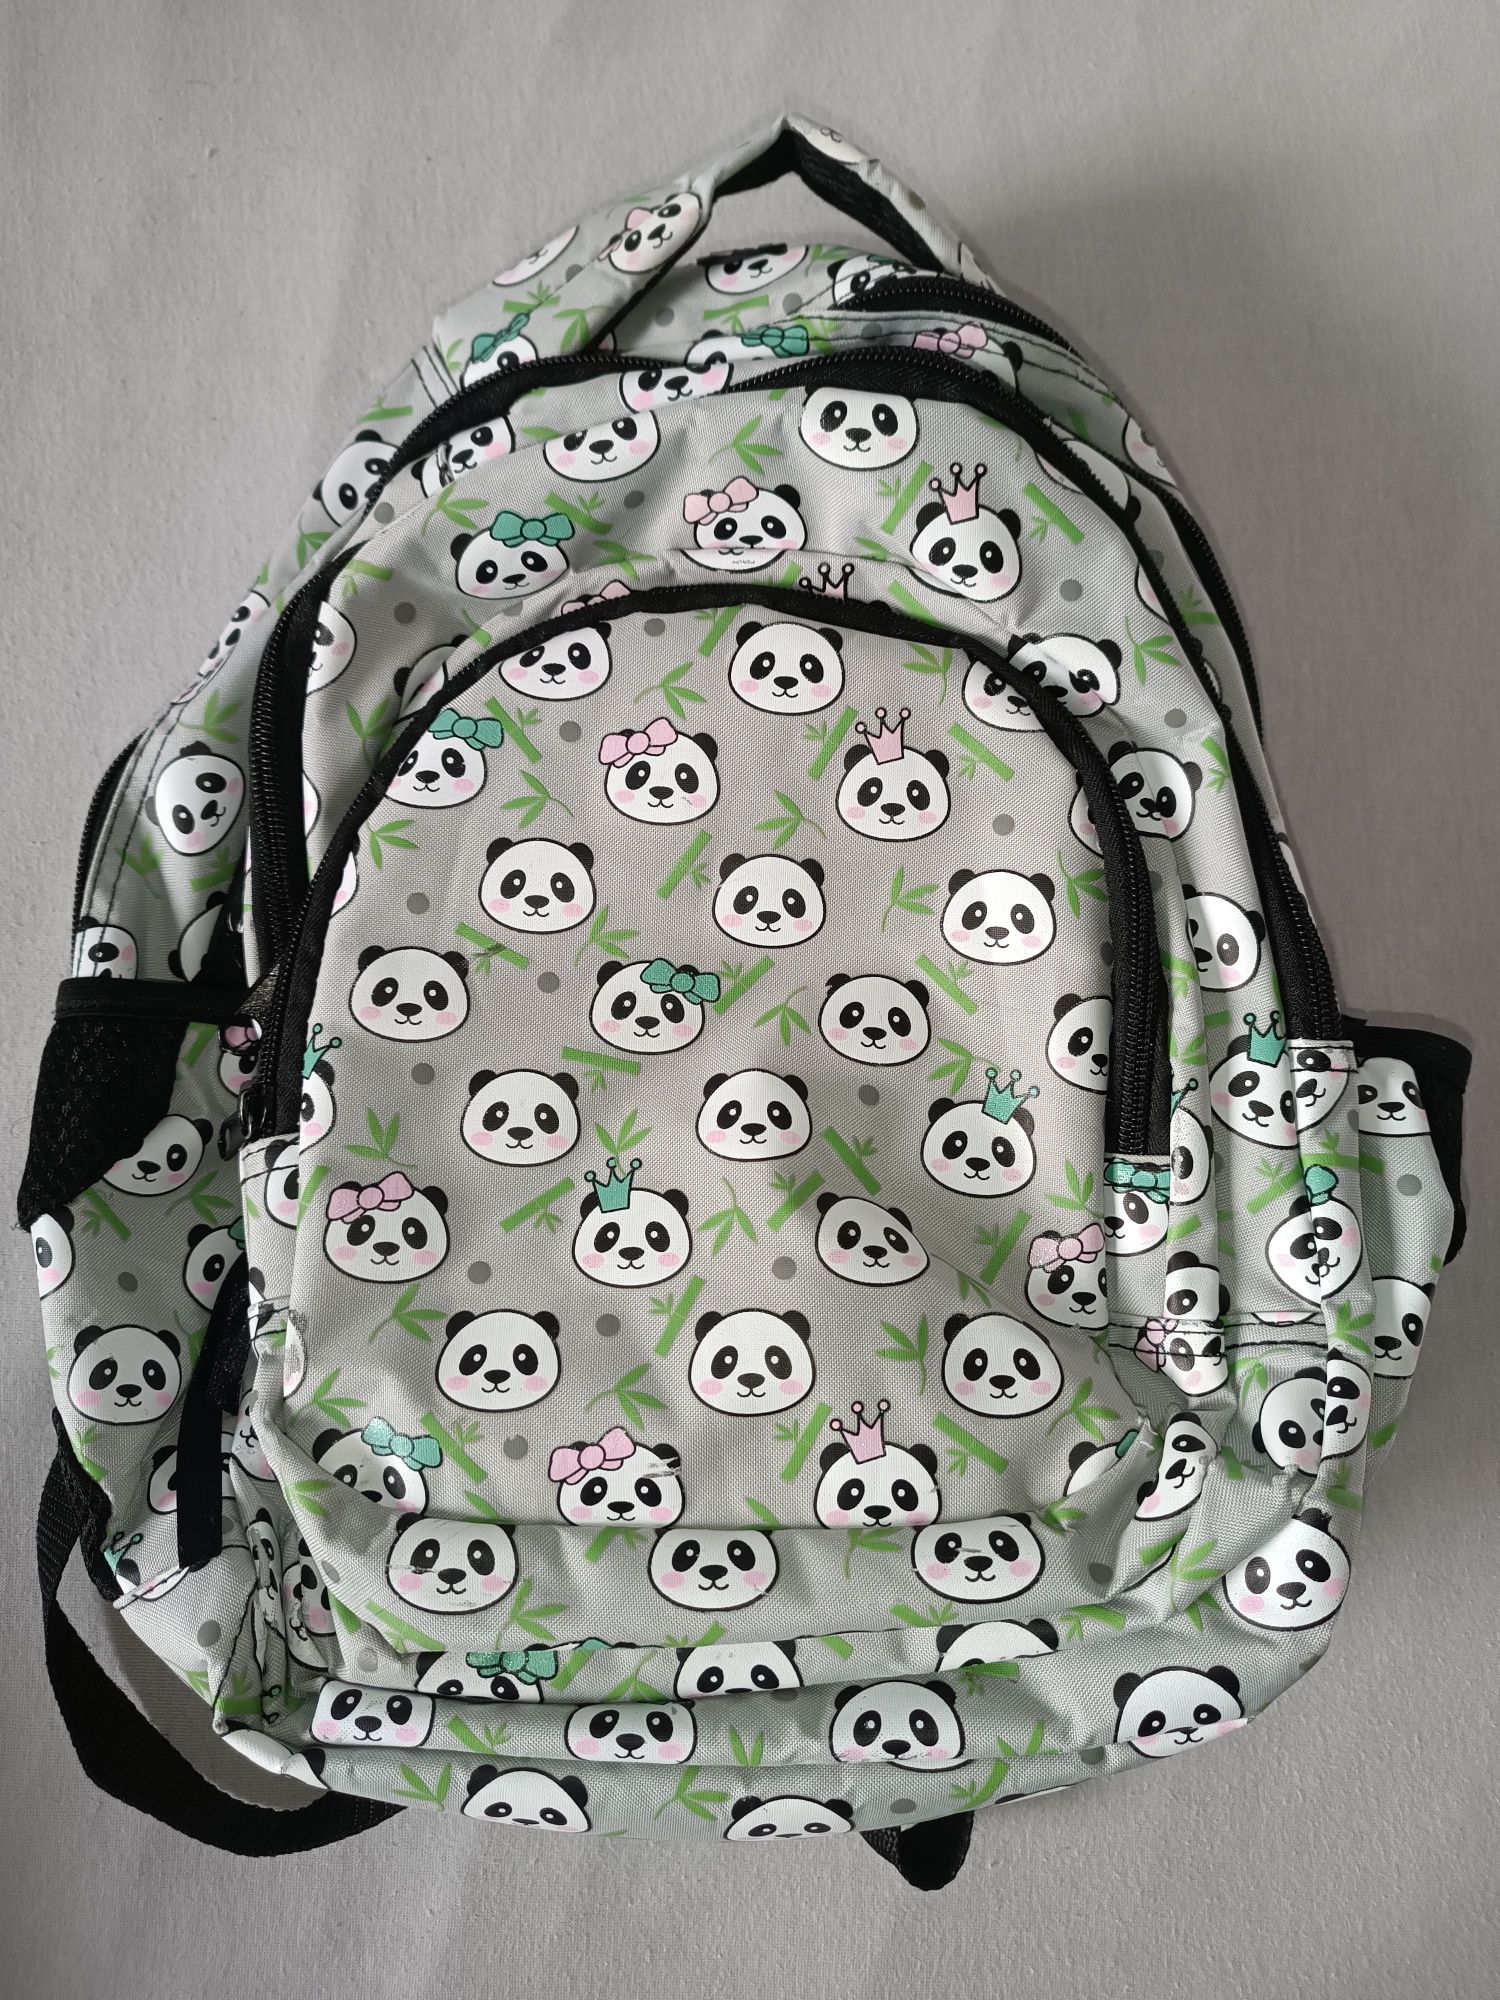 Plecak szkolny w pandy